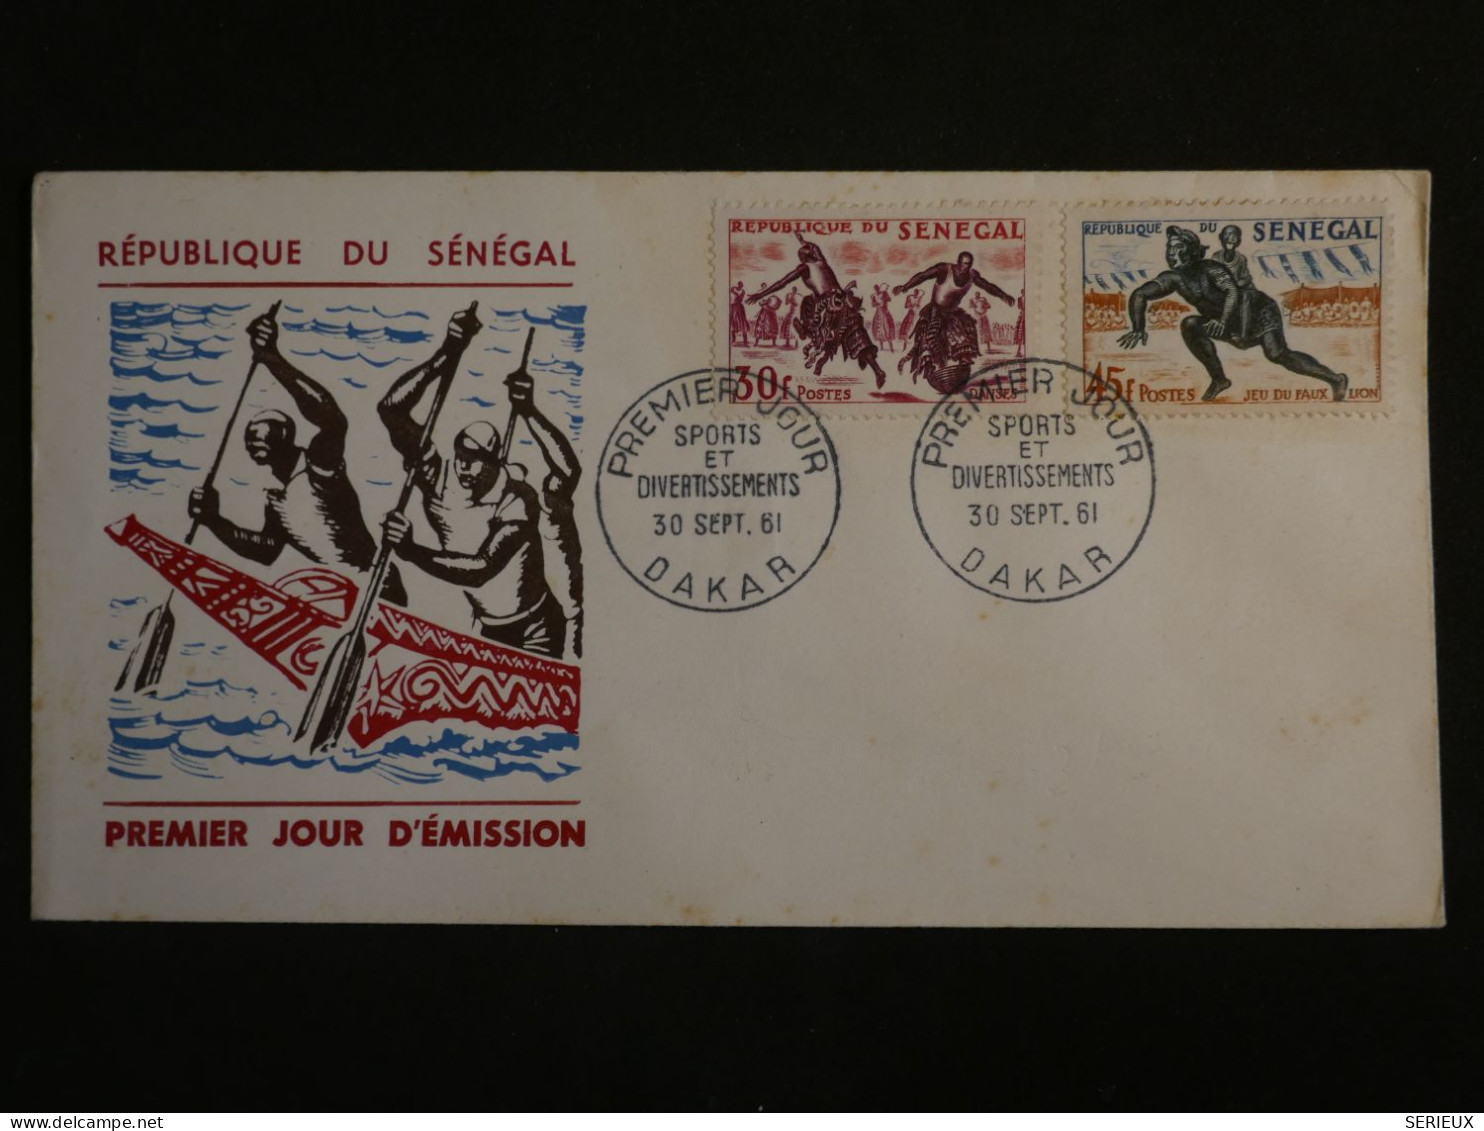 DO17 SENEGAL  LETTRE FDC  1961 +AFF. INTERESSANT ++ - Sénégal (1960-...)